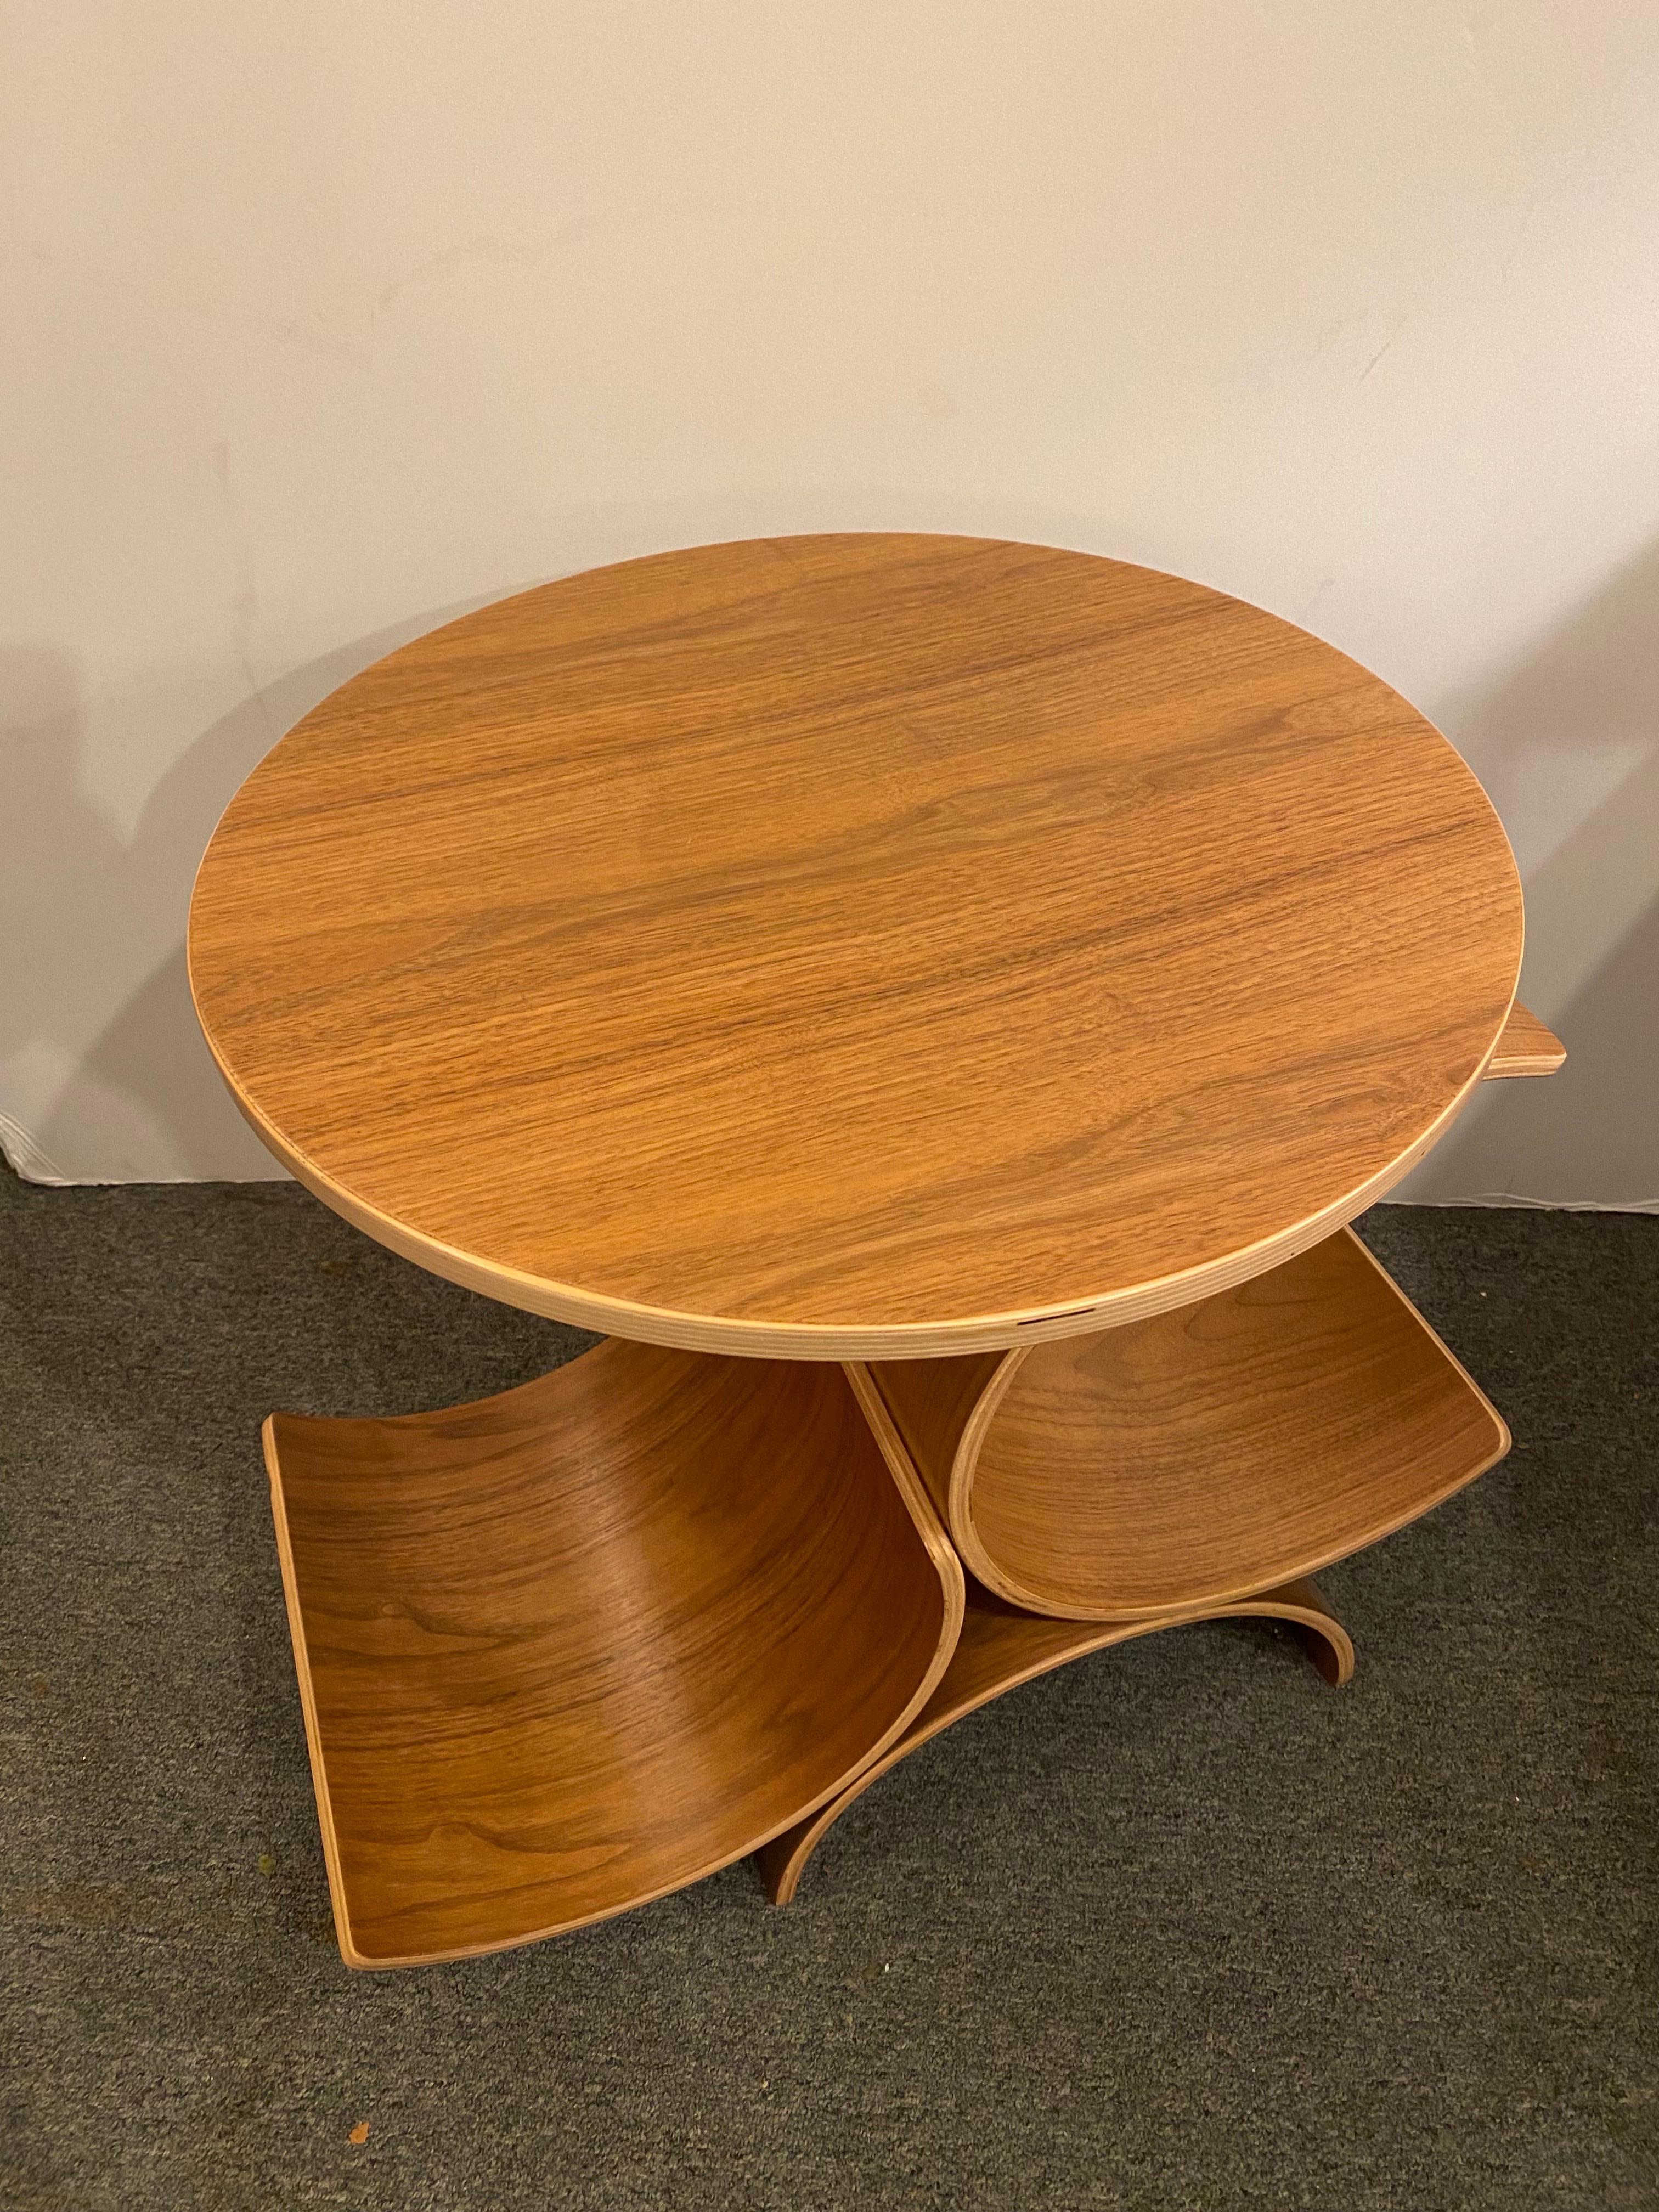 In House Zuckerman/ Lawton Design Tisch aus Formsperrholz mit Platten aus Nussbaum.  Curvy Form funktioniert sowohl als Zeitschriftenständer als auch als Beistelltisch.  Die Tabelle stammt aus den späten 90er- und frühen 2000er-Jahren.